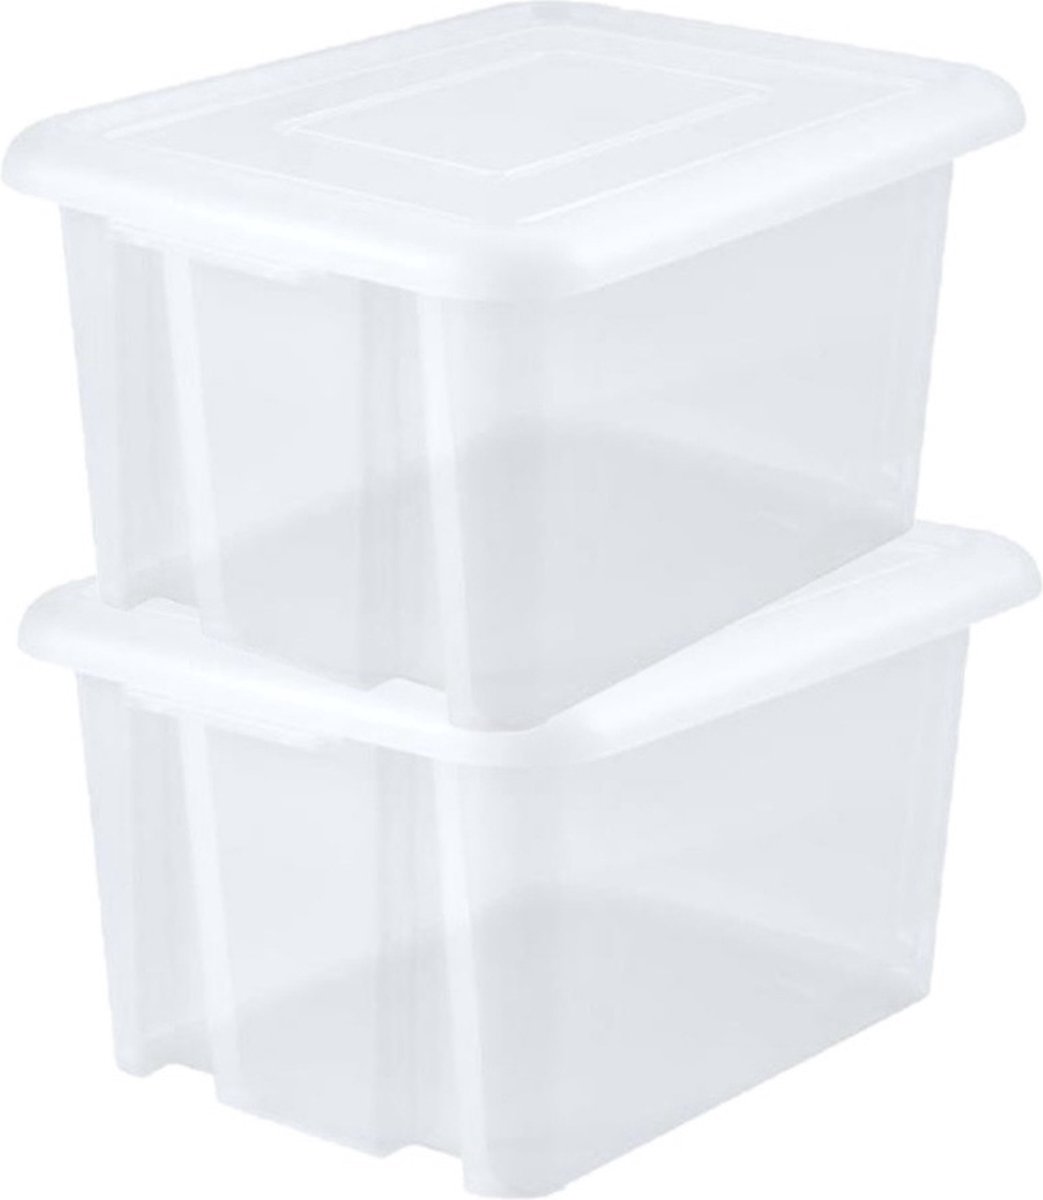 8x stuks kunststof opbergboxen/opbergdozen wit transparant L65 x B50 x H36 cm stapelbaar - Voorraad/opberg boxen/kisten/bakken met deksel